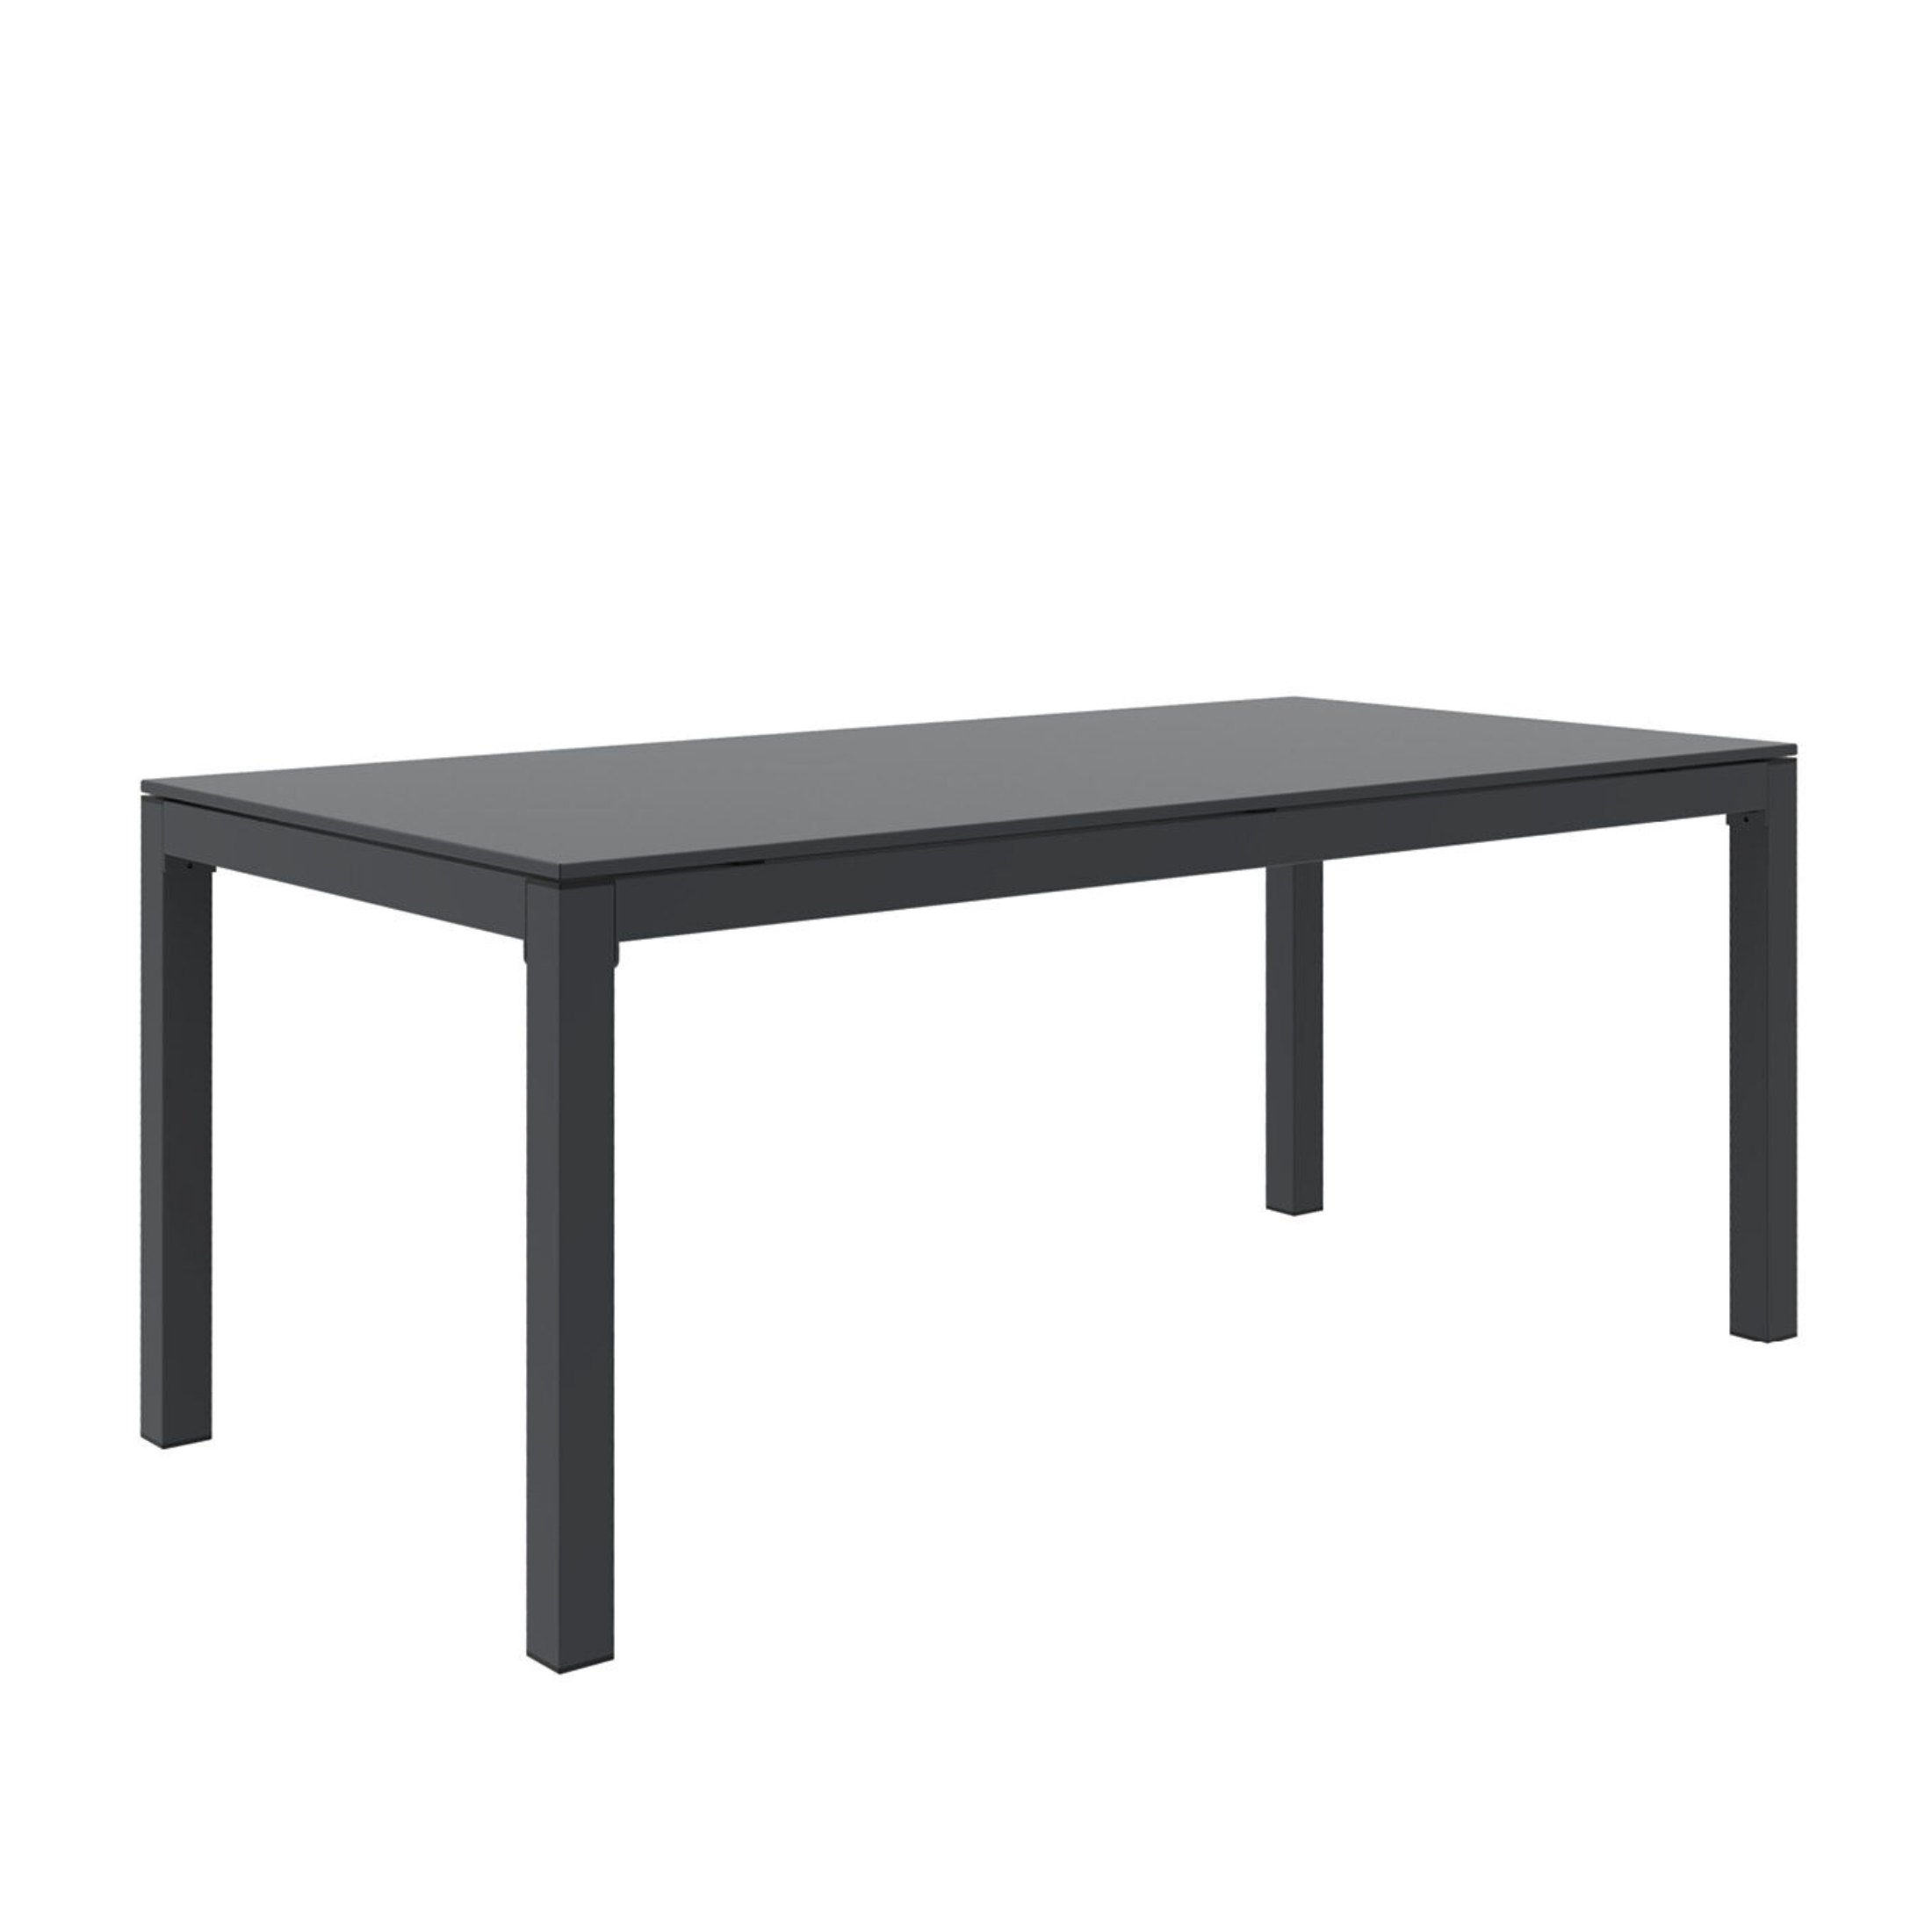 Table extensible en métal peint "Sofy" pour jardin moderne 250/400x90 cm 75h